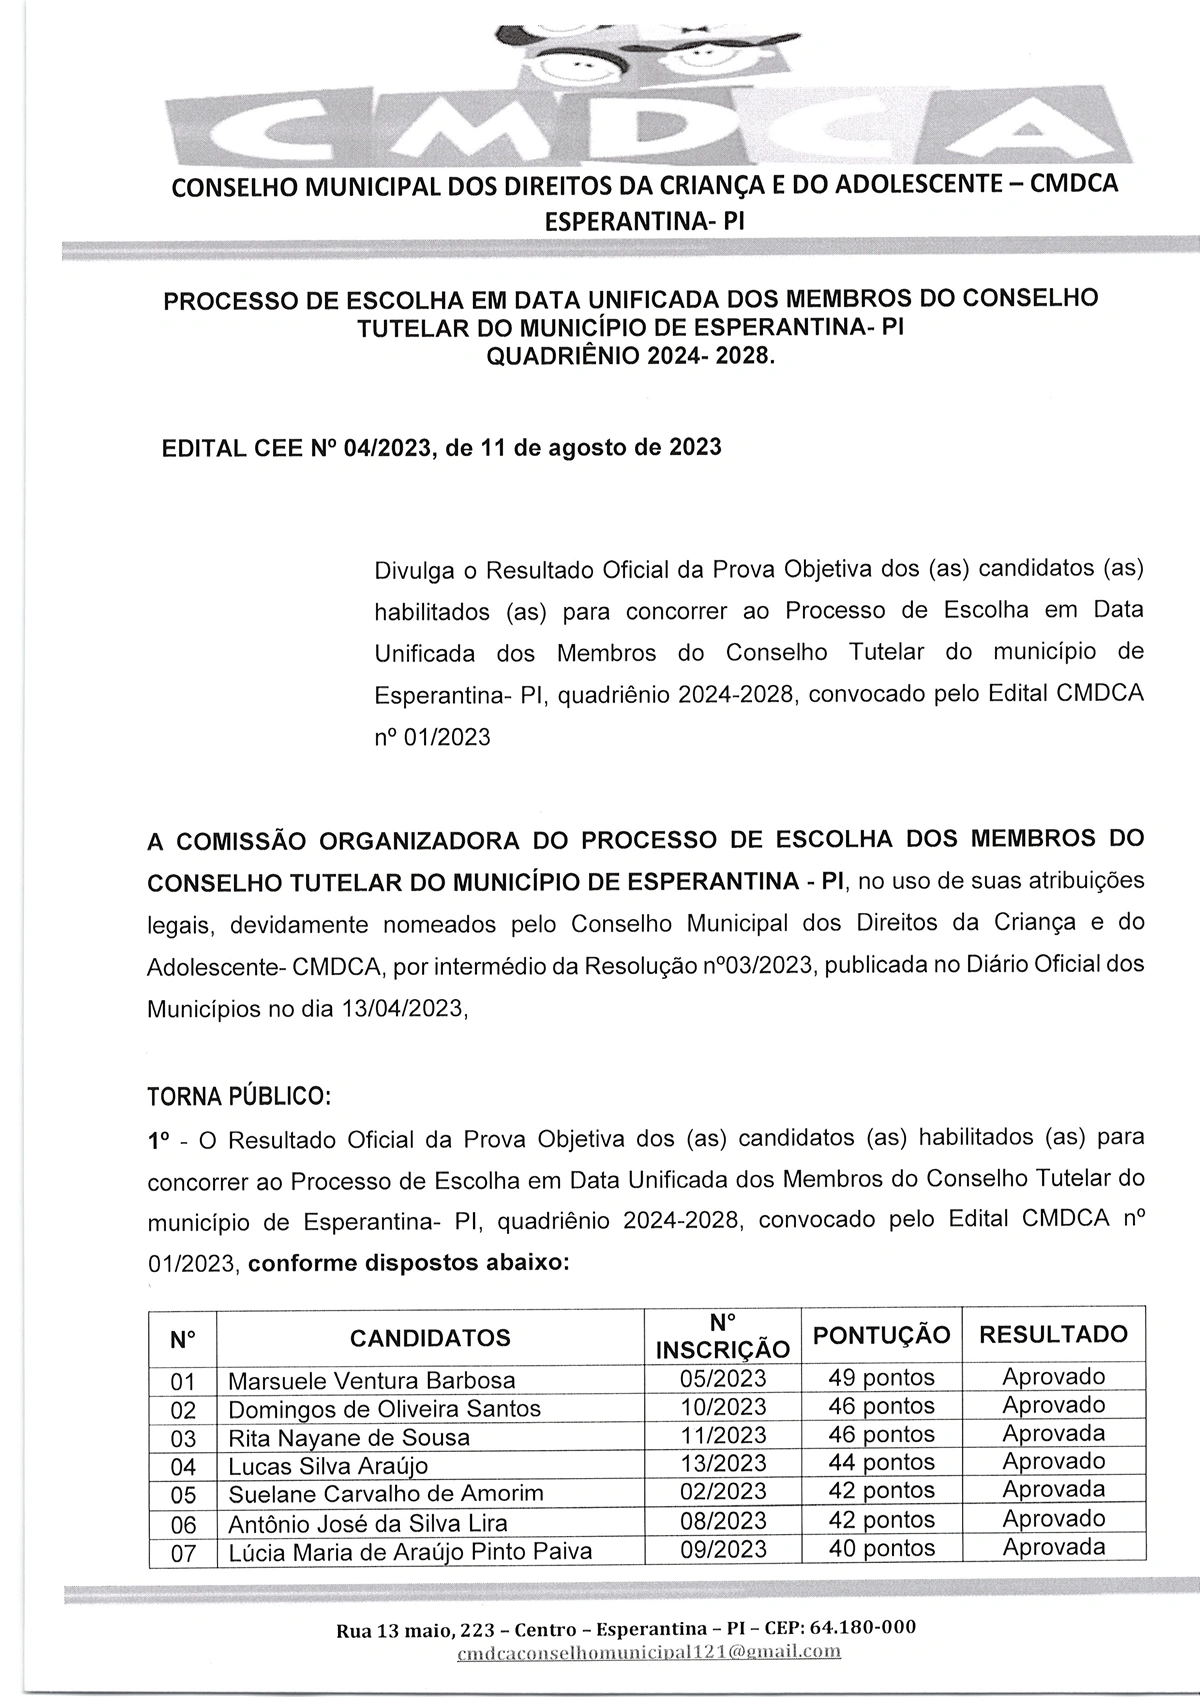 Resultado Oficial dos Candidatos ao Conselho Tutelar de Esperantina